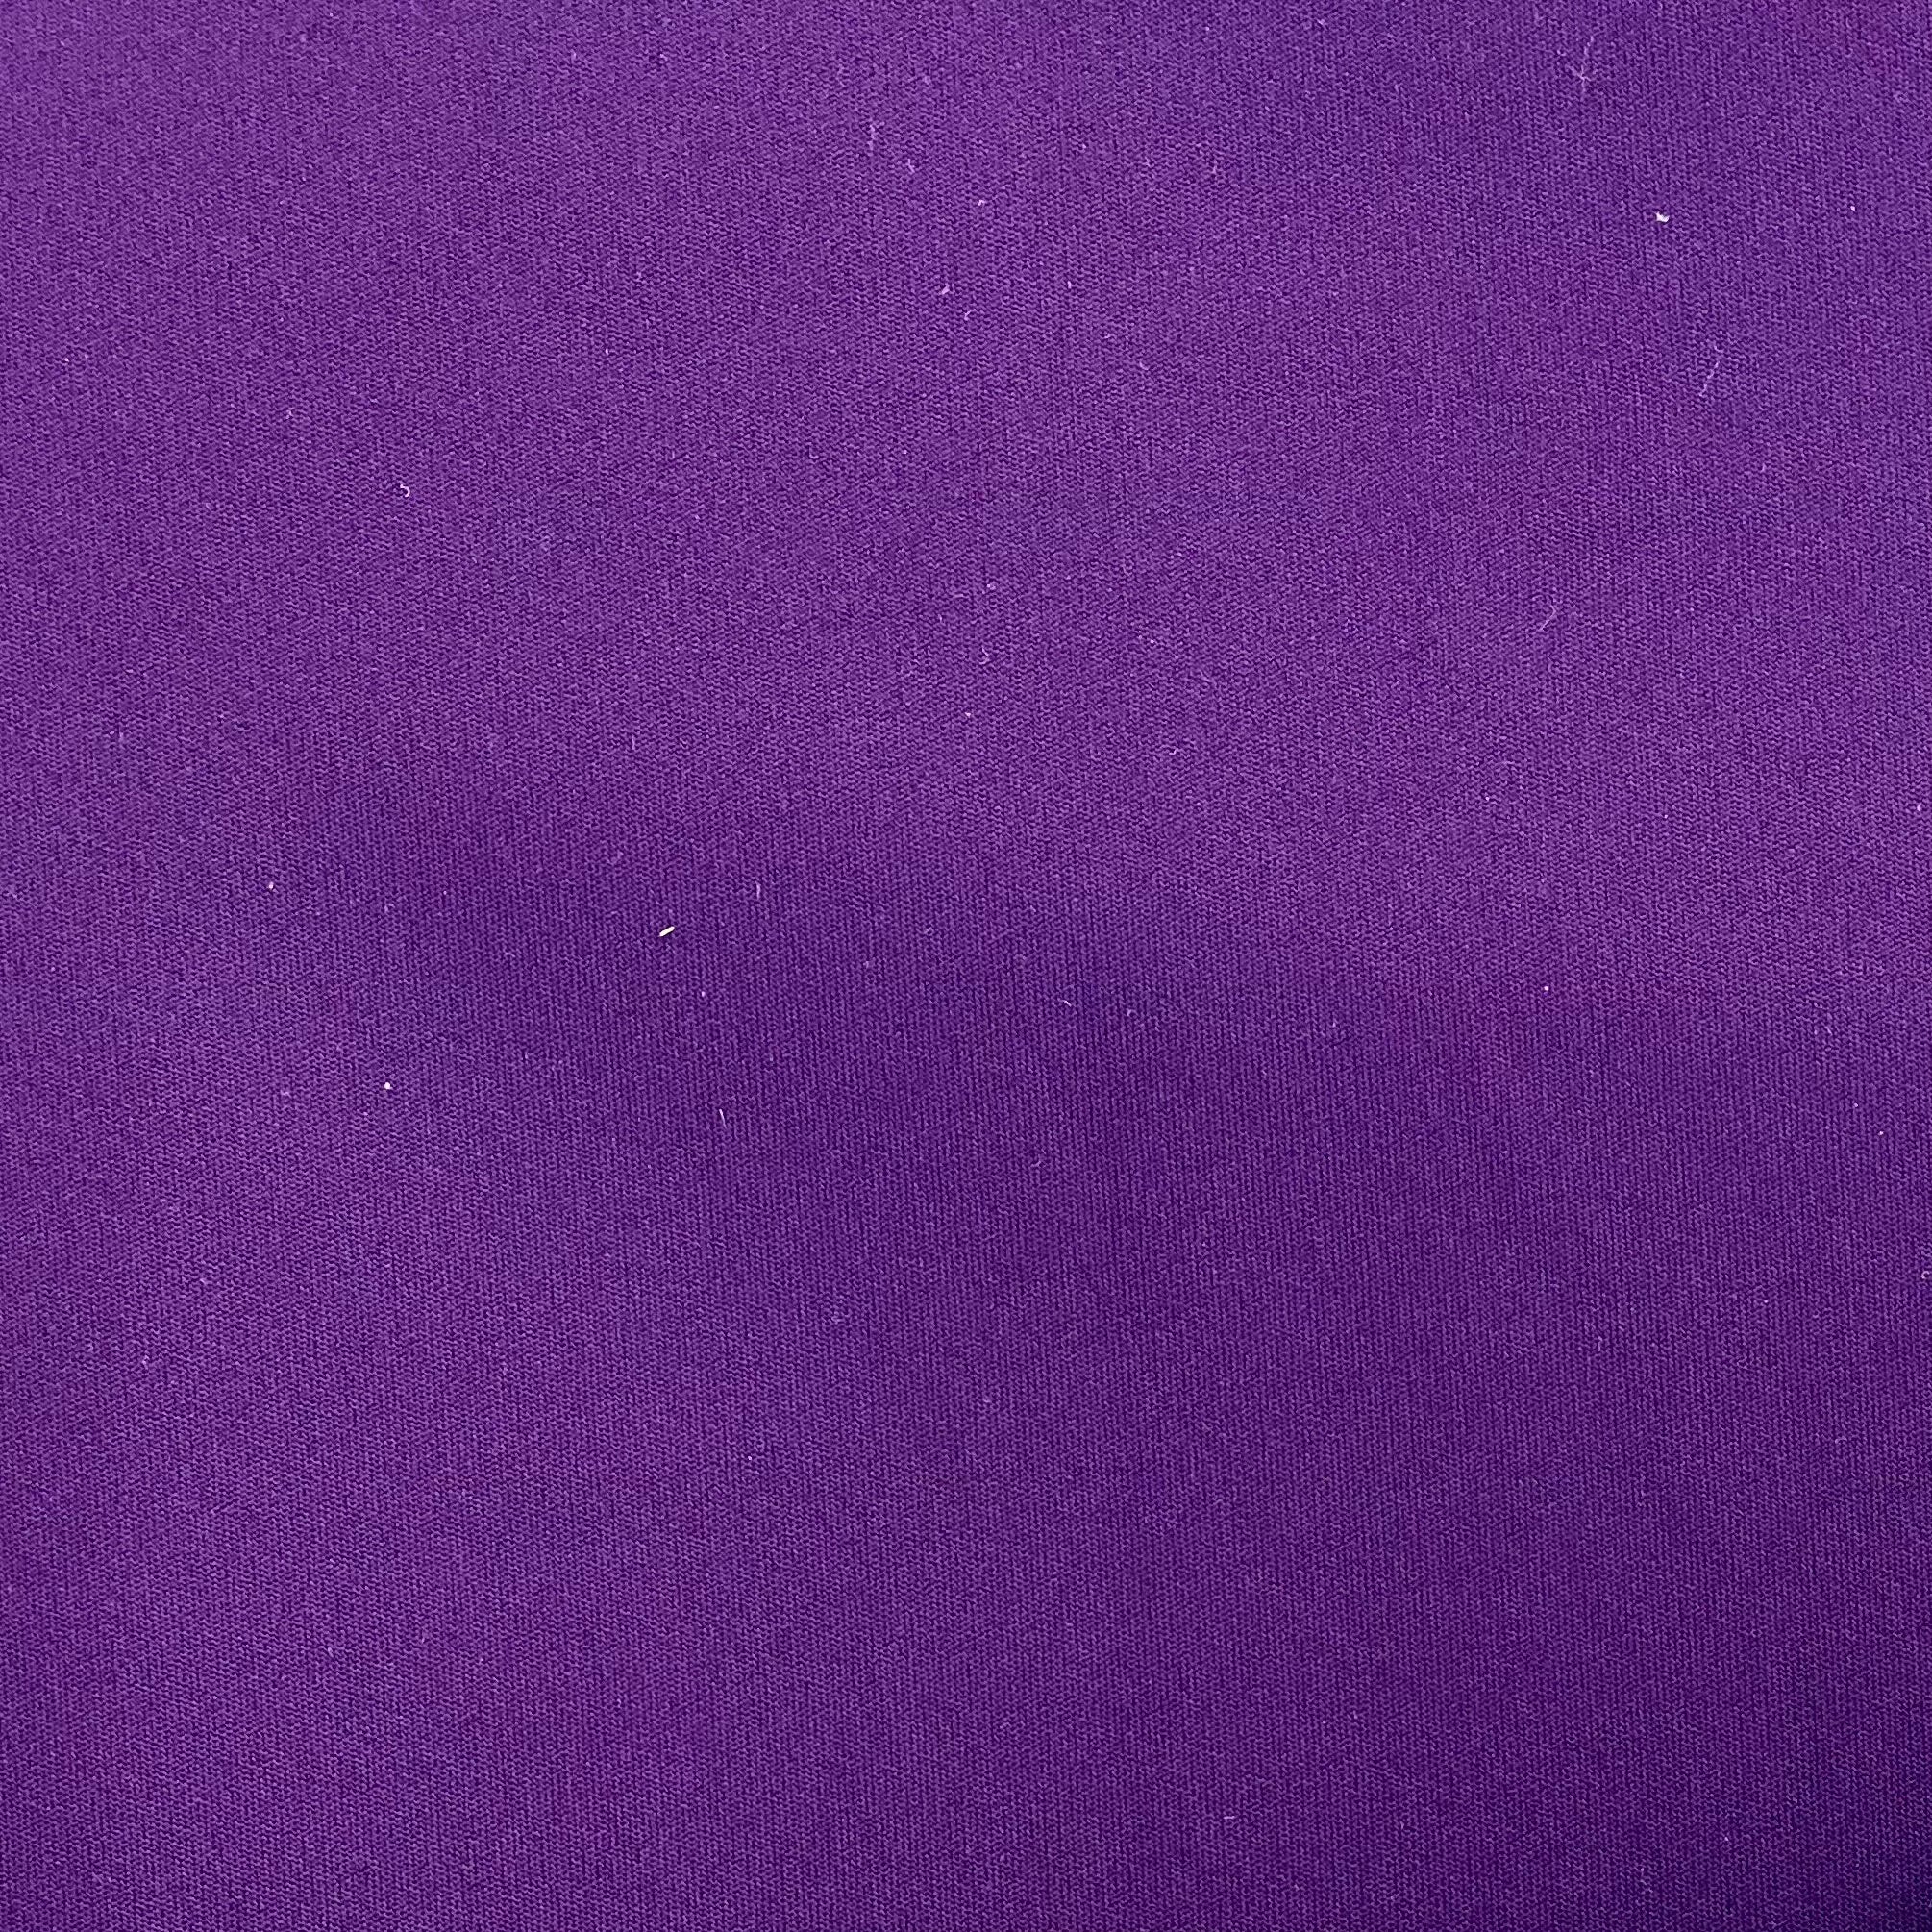 Align 2 - Purple Passion